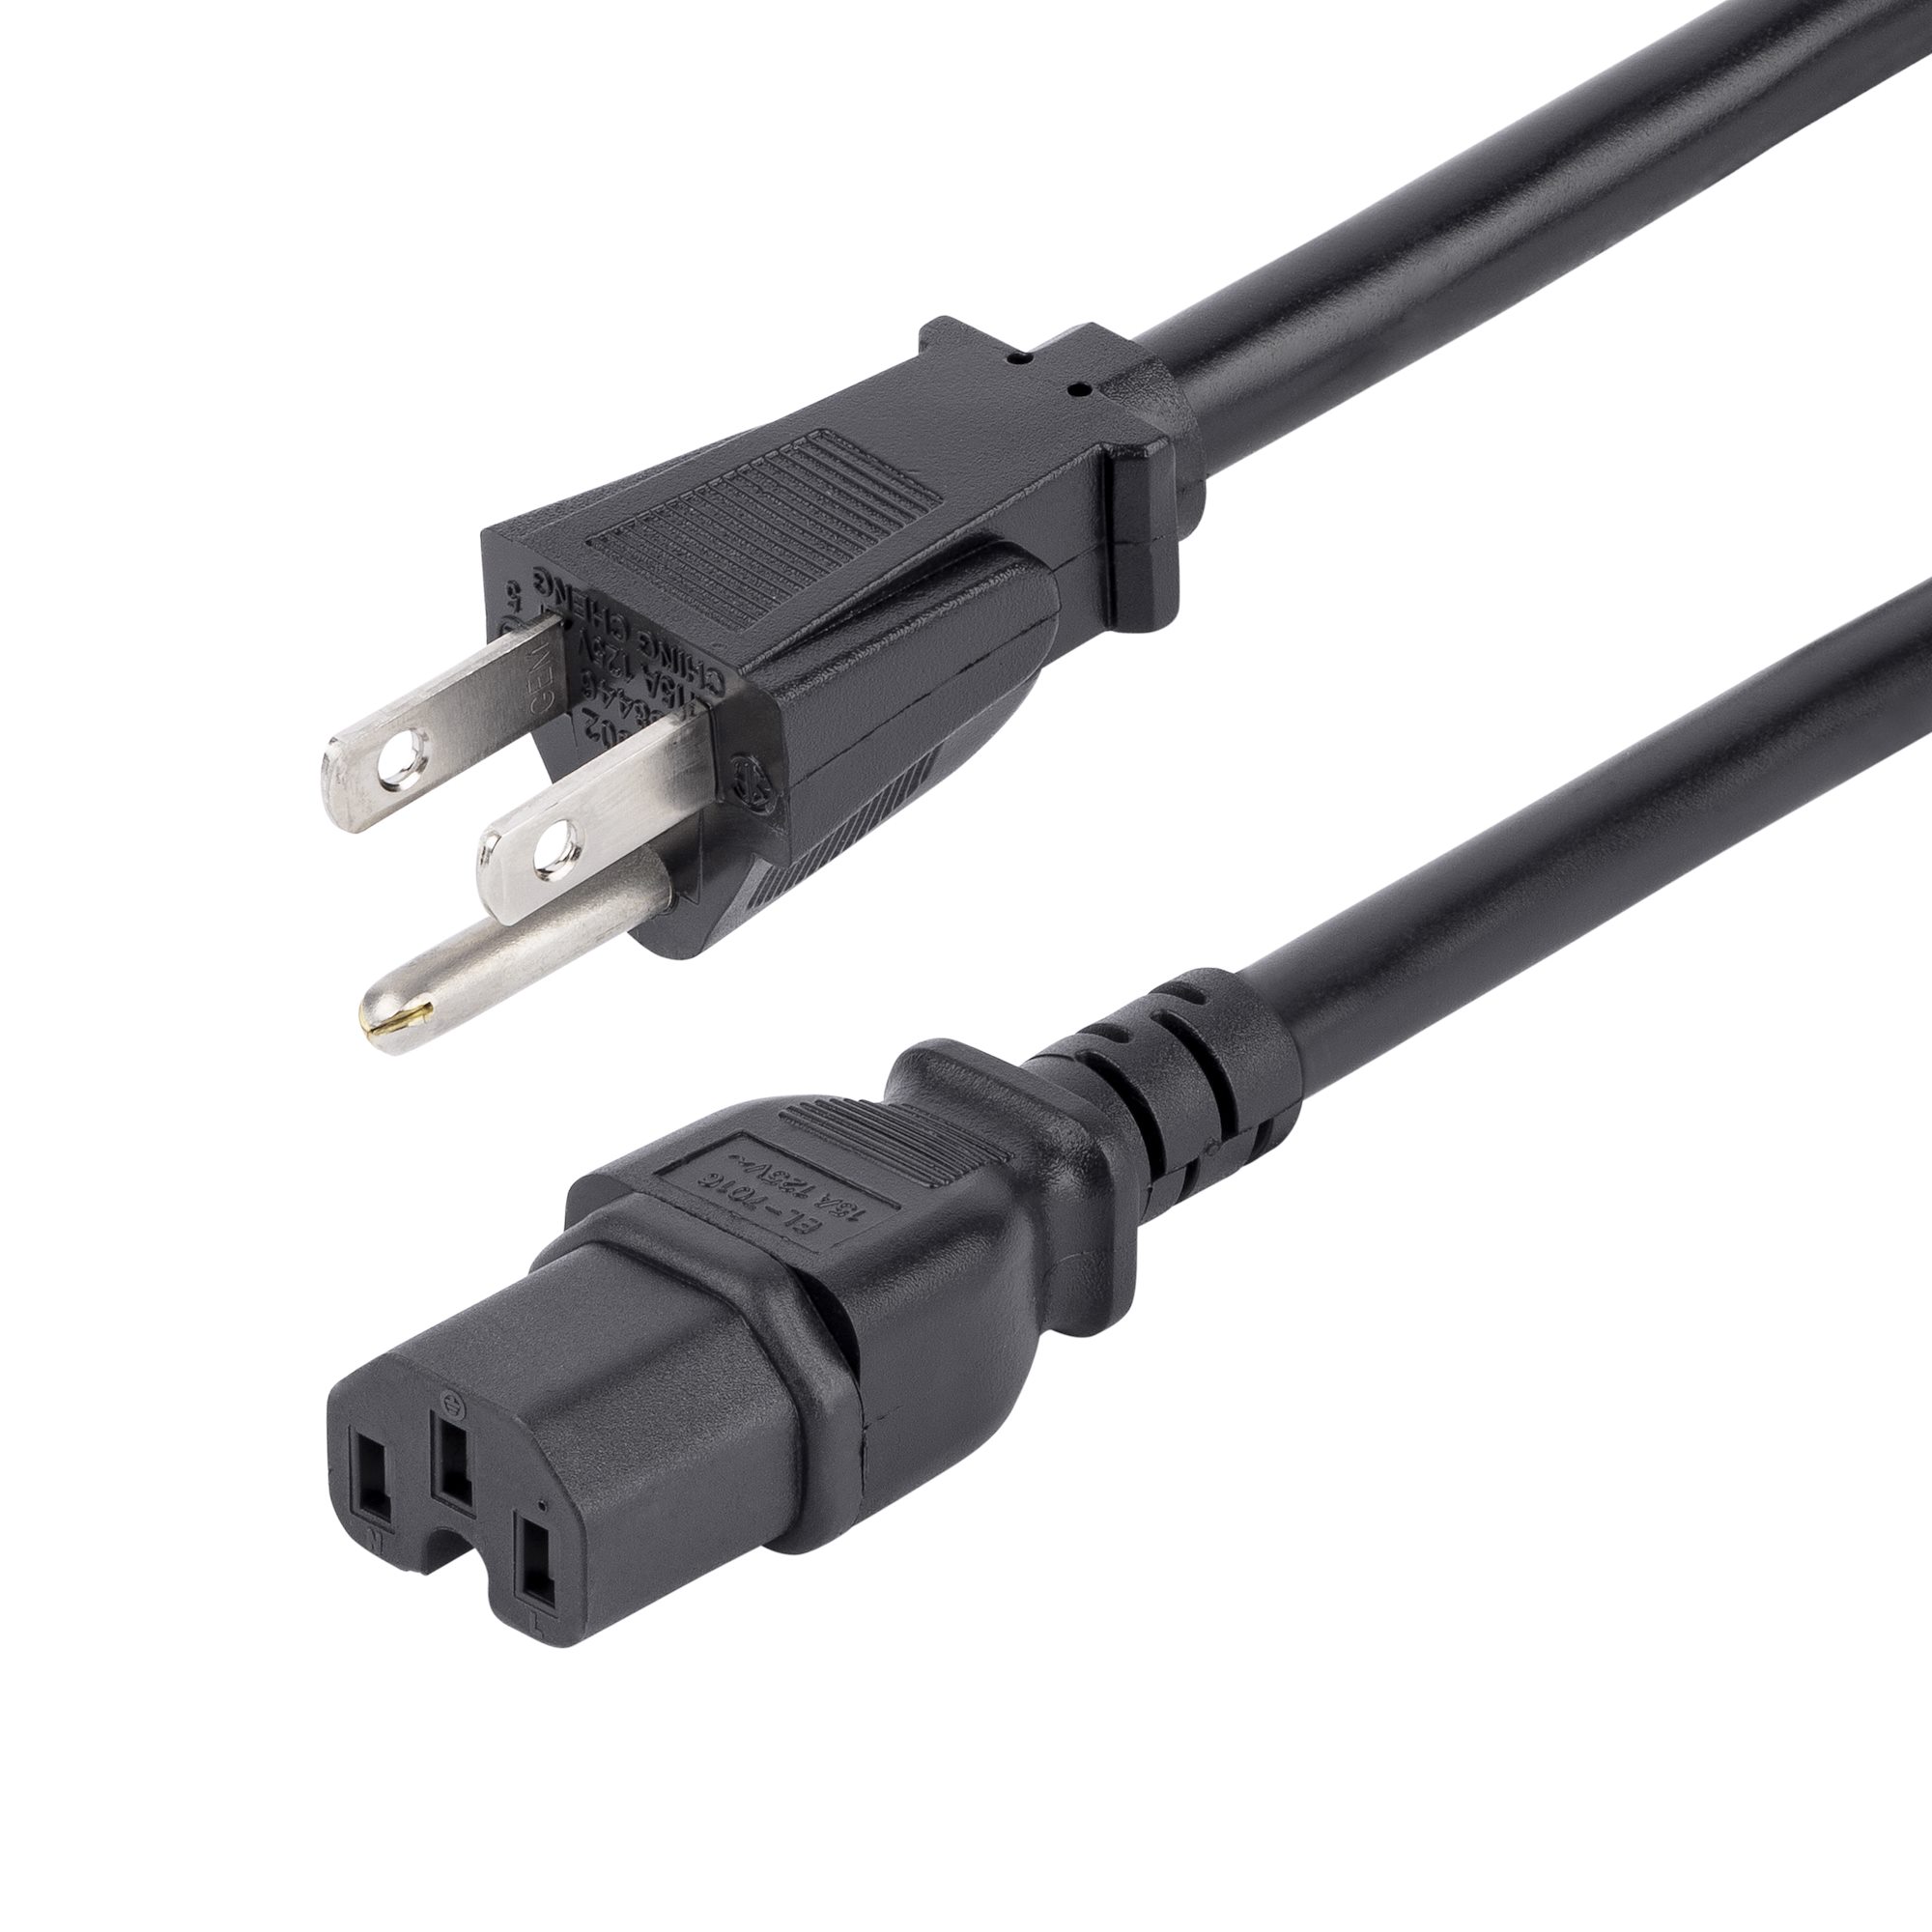 Cable de alimentación 4FT compatible con la consola Ecuador